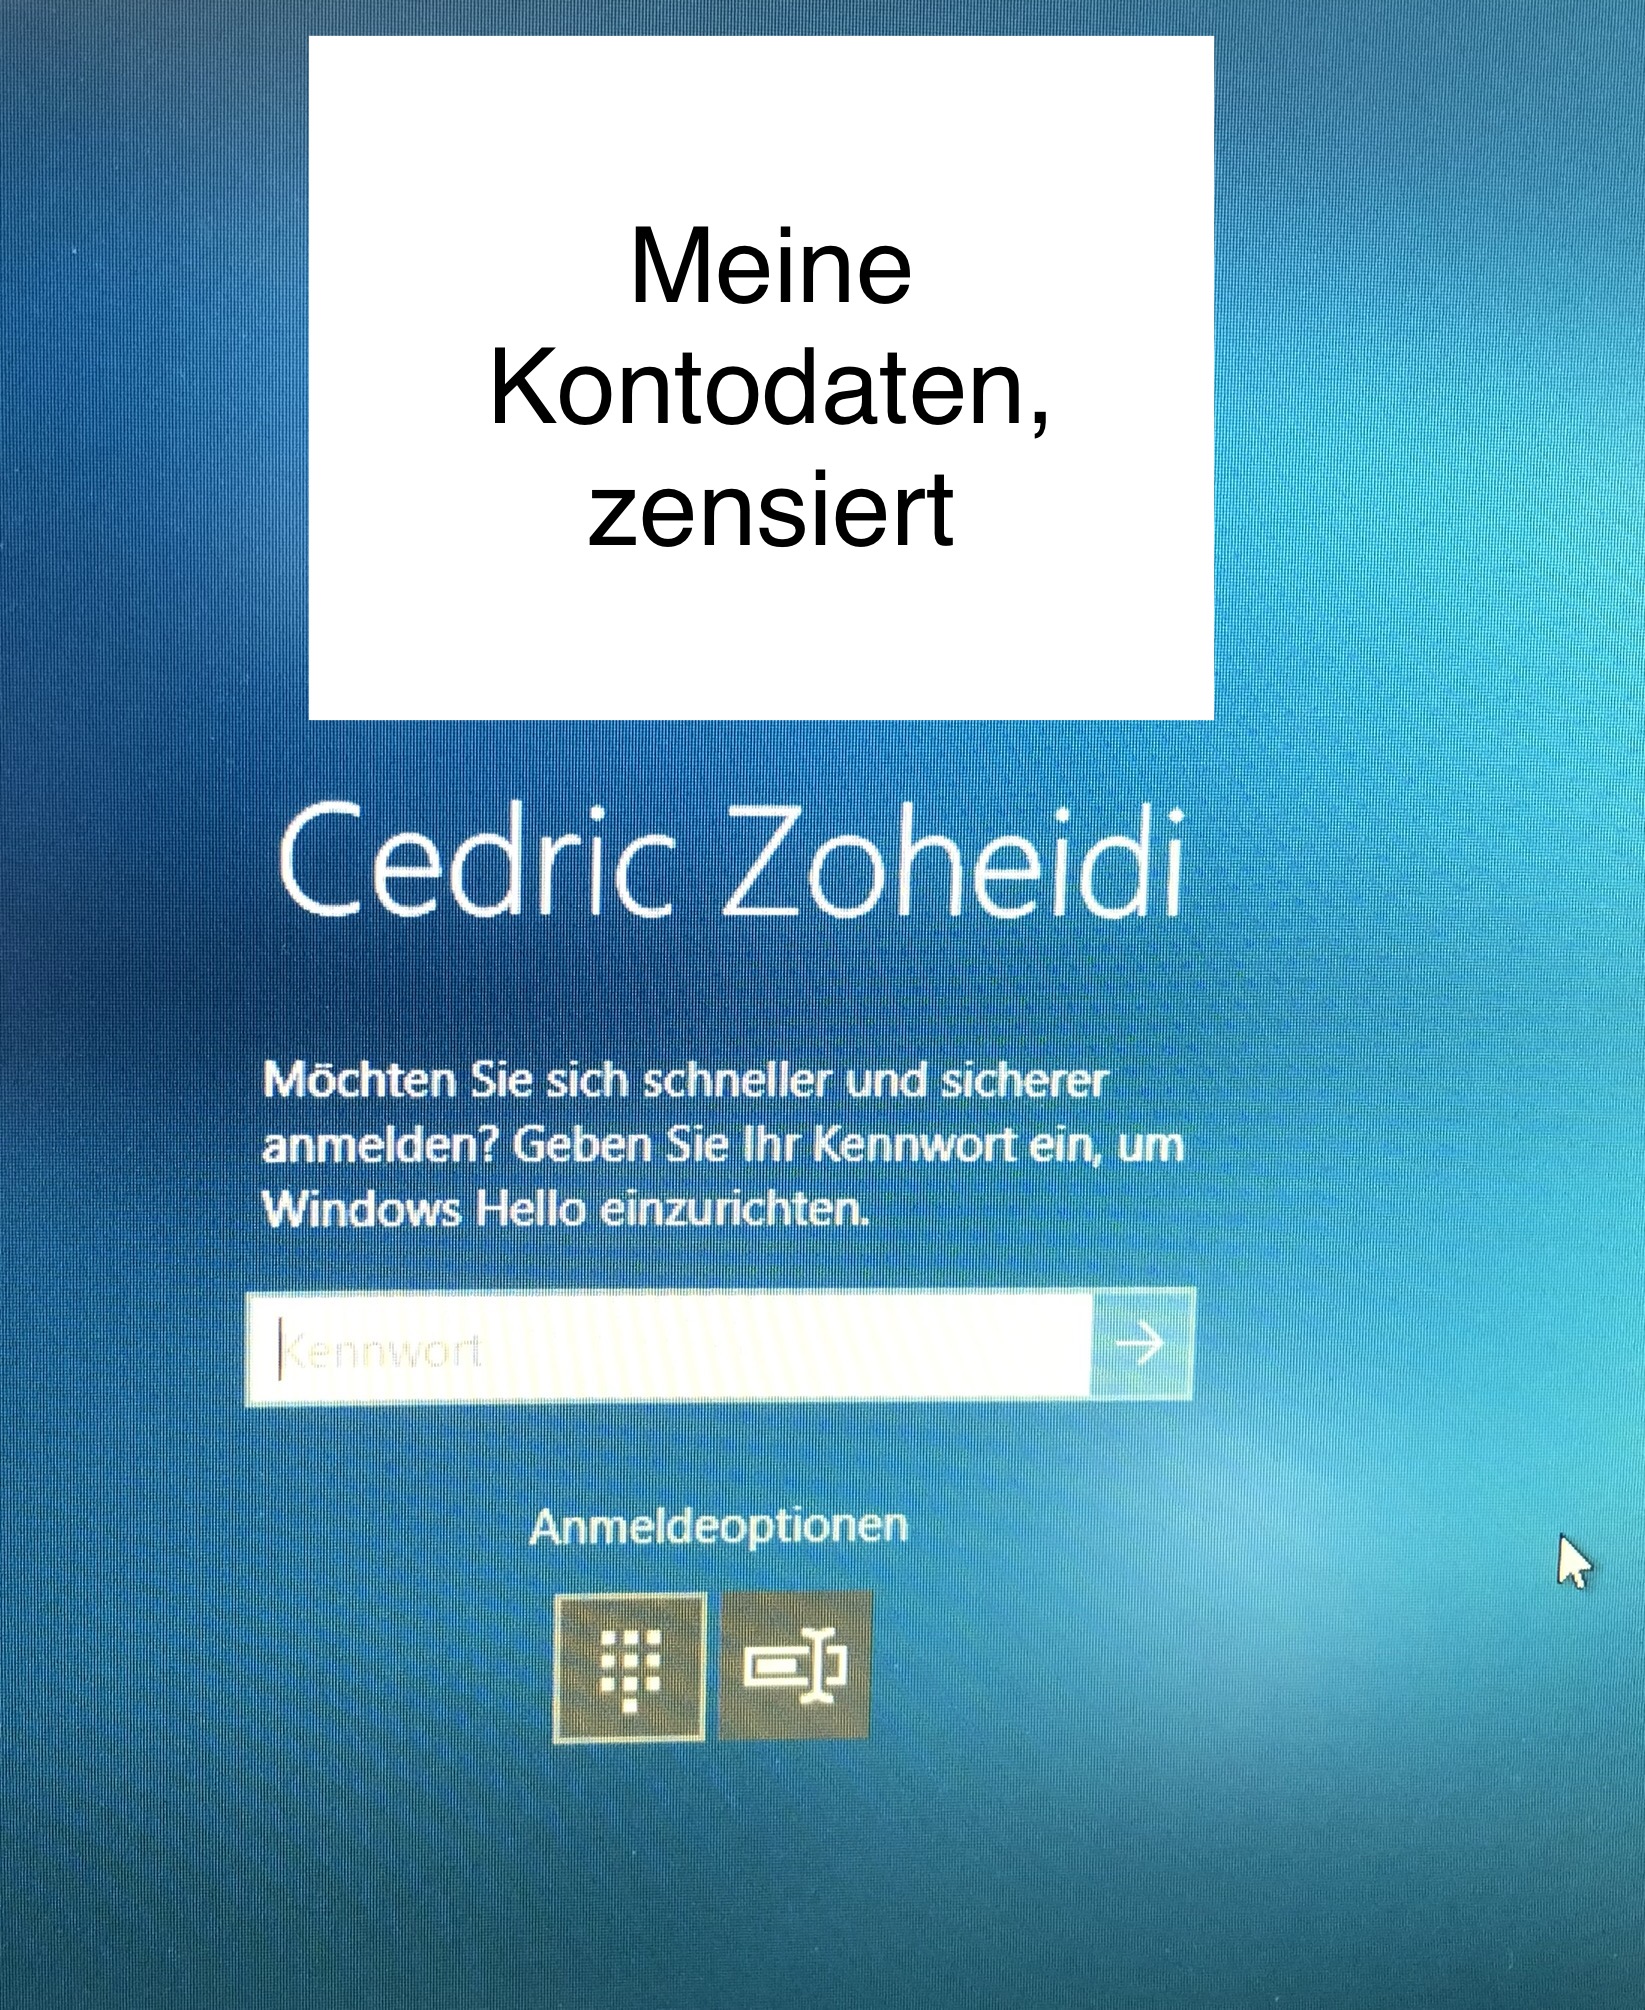 Windows 10: Vorschlag zur PIN-Anmeldung deaktiveren